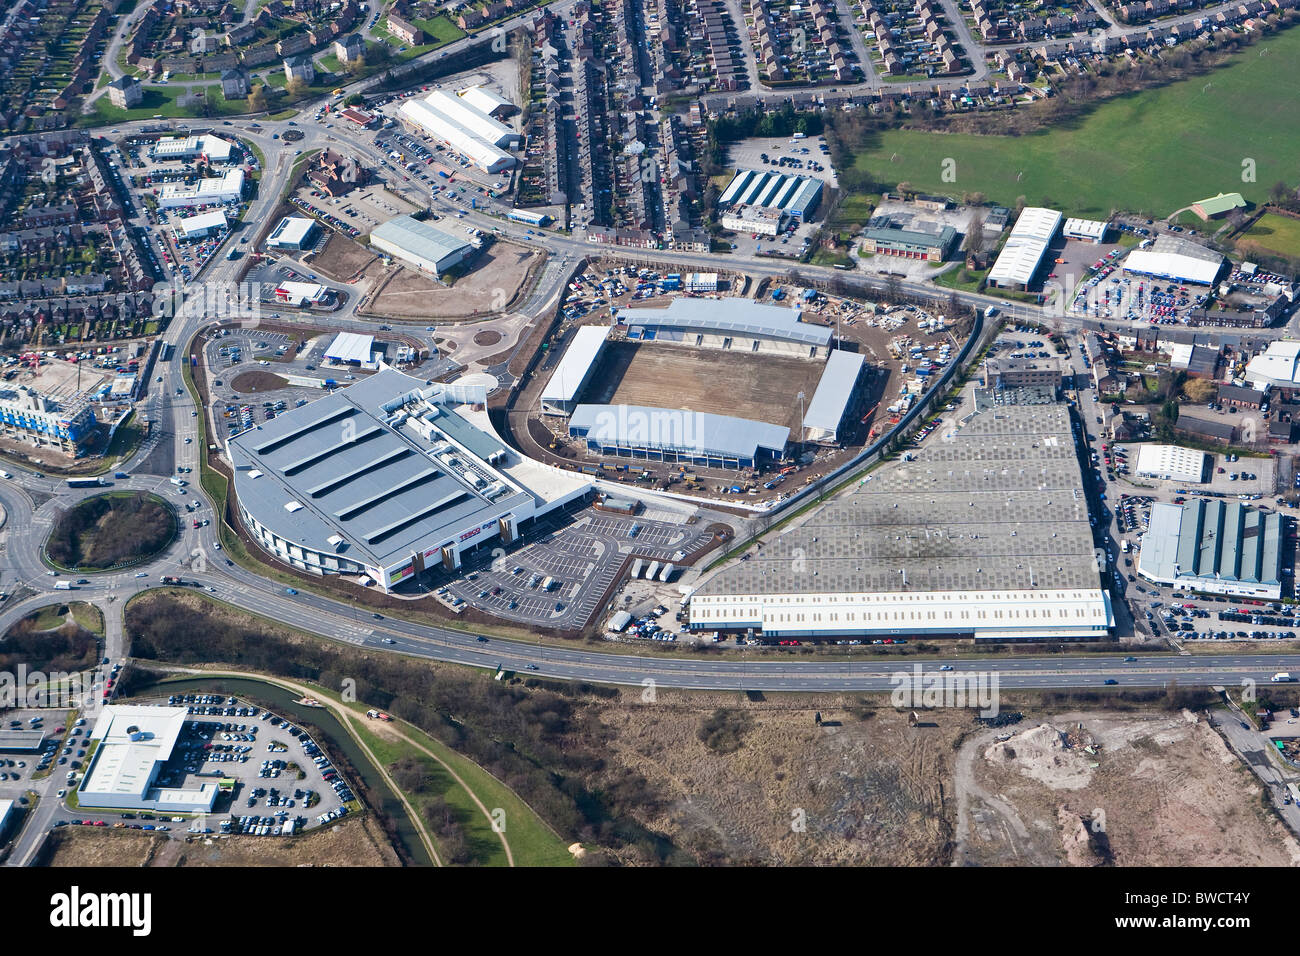 Vista aerea del Tesco's Super Extra Store accanto a Chesterfield Football Club nuovo B2Net Soccer Stadium in costruzione Foto Stock